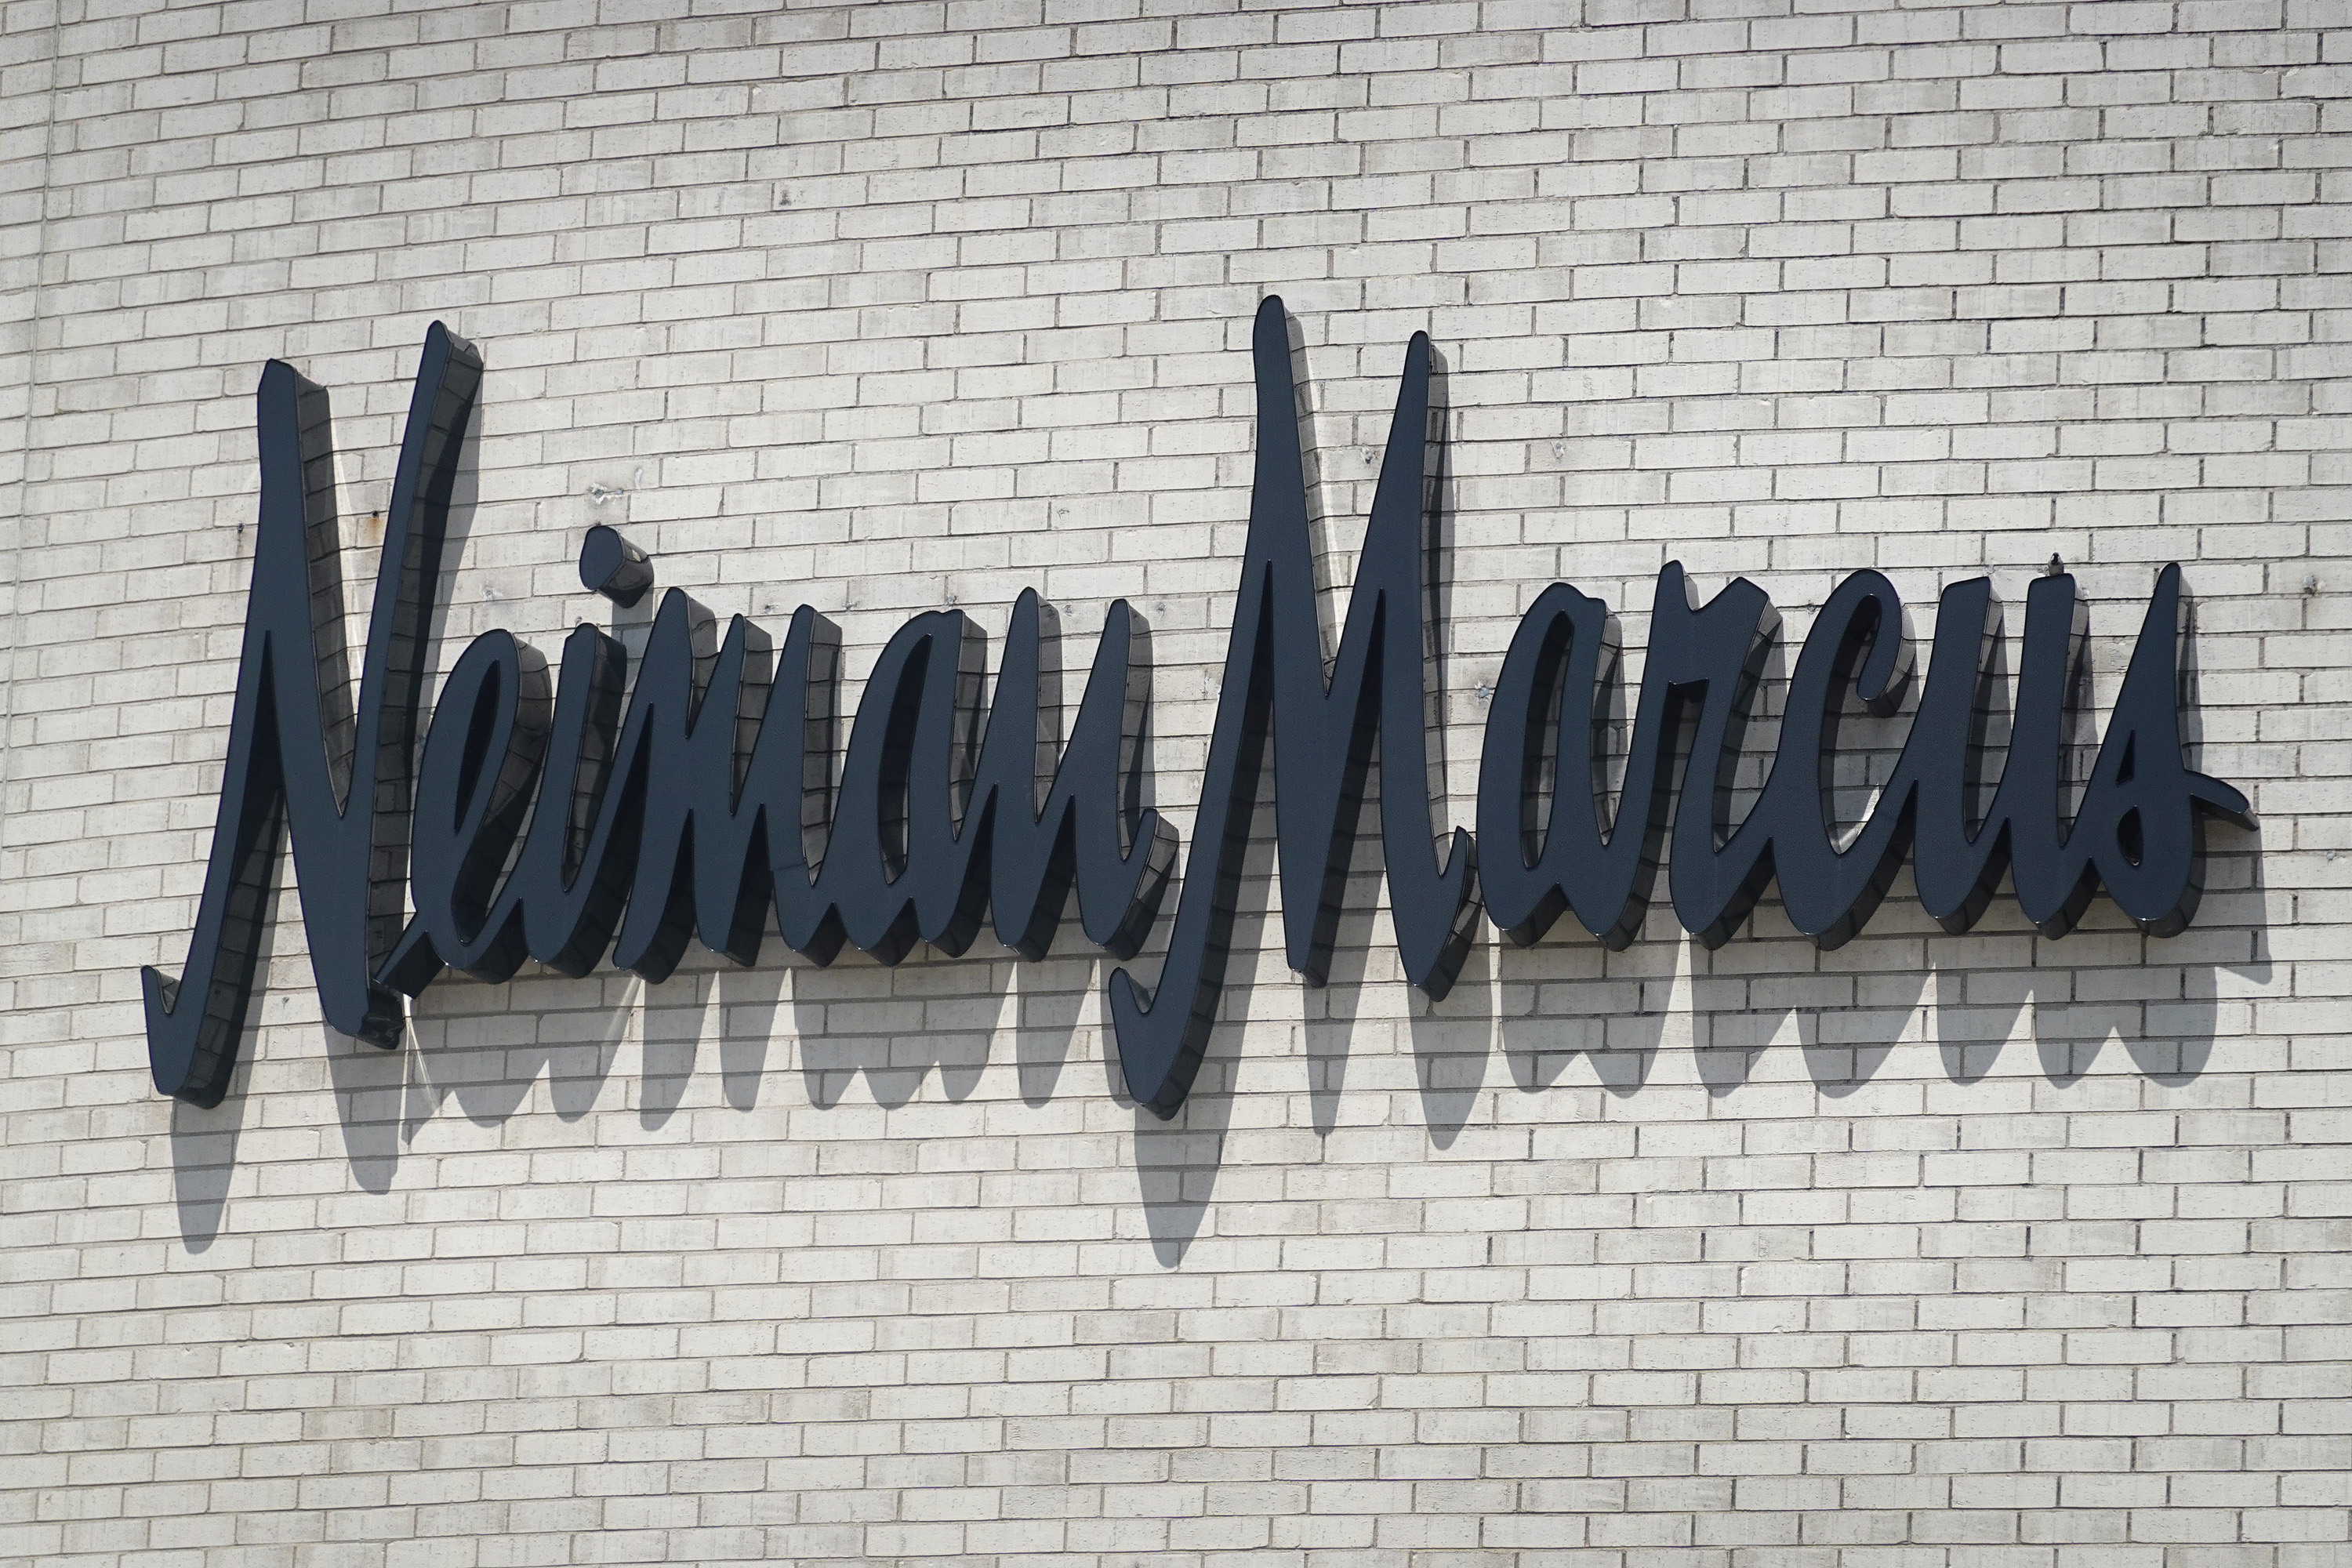 Neiman Marcus announces closure of Natick location